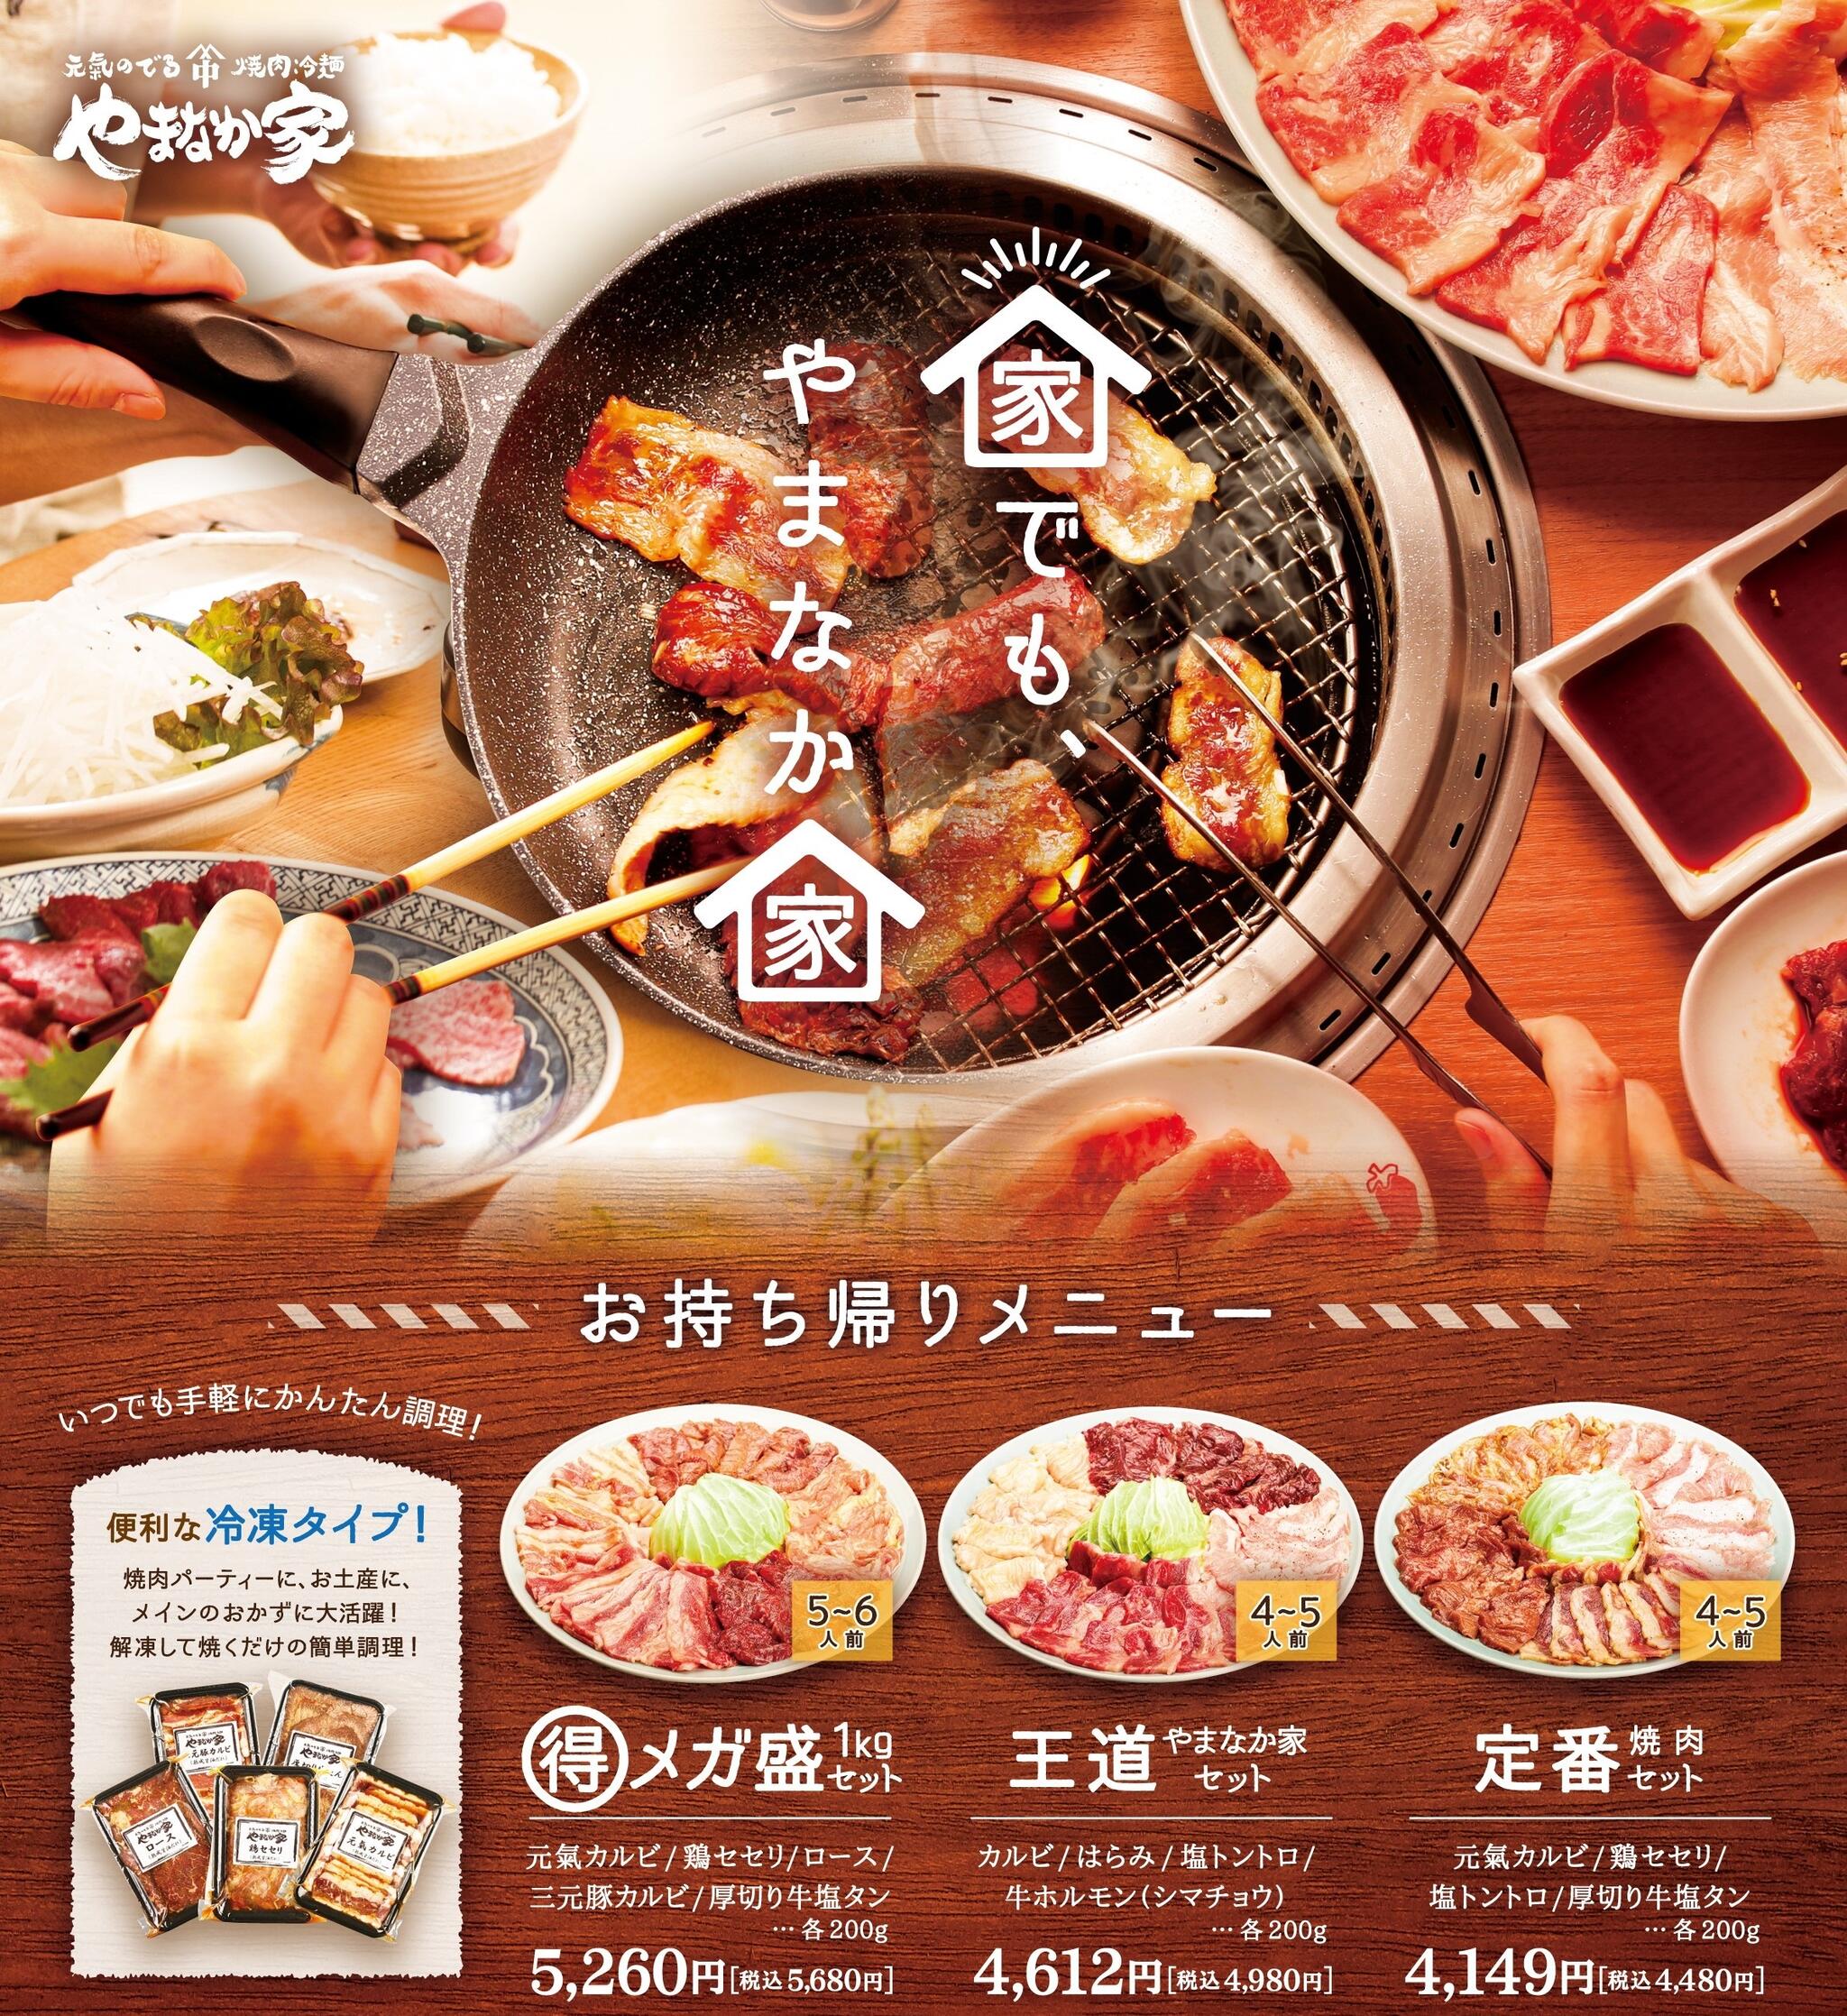 焼肉冷麺やまなか家 上田バイパス店からのお知らせ(🚩おうち焼肉店舗にて販売中🚩 )に関する写真